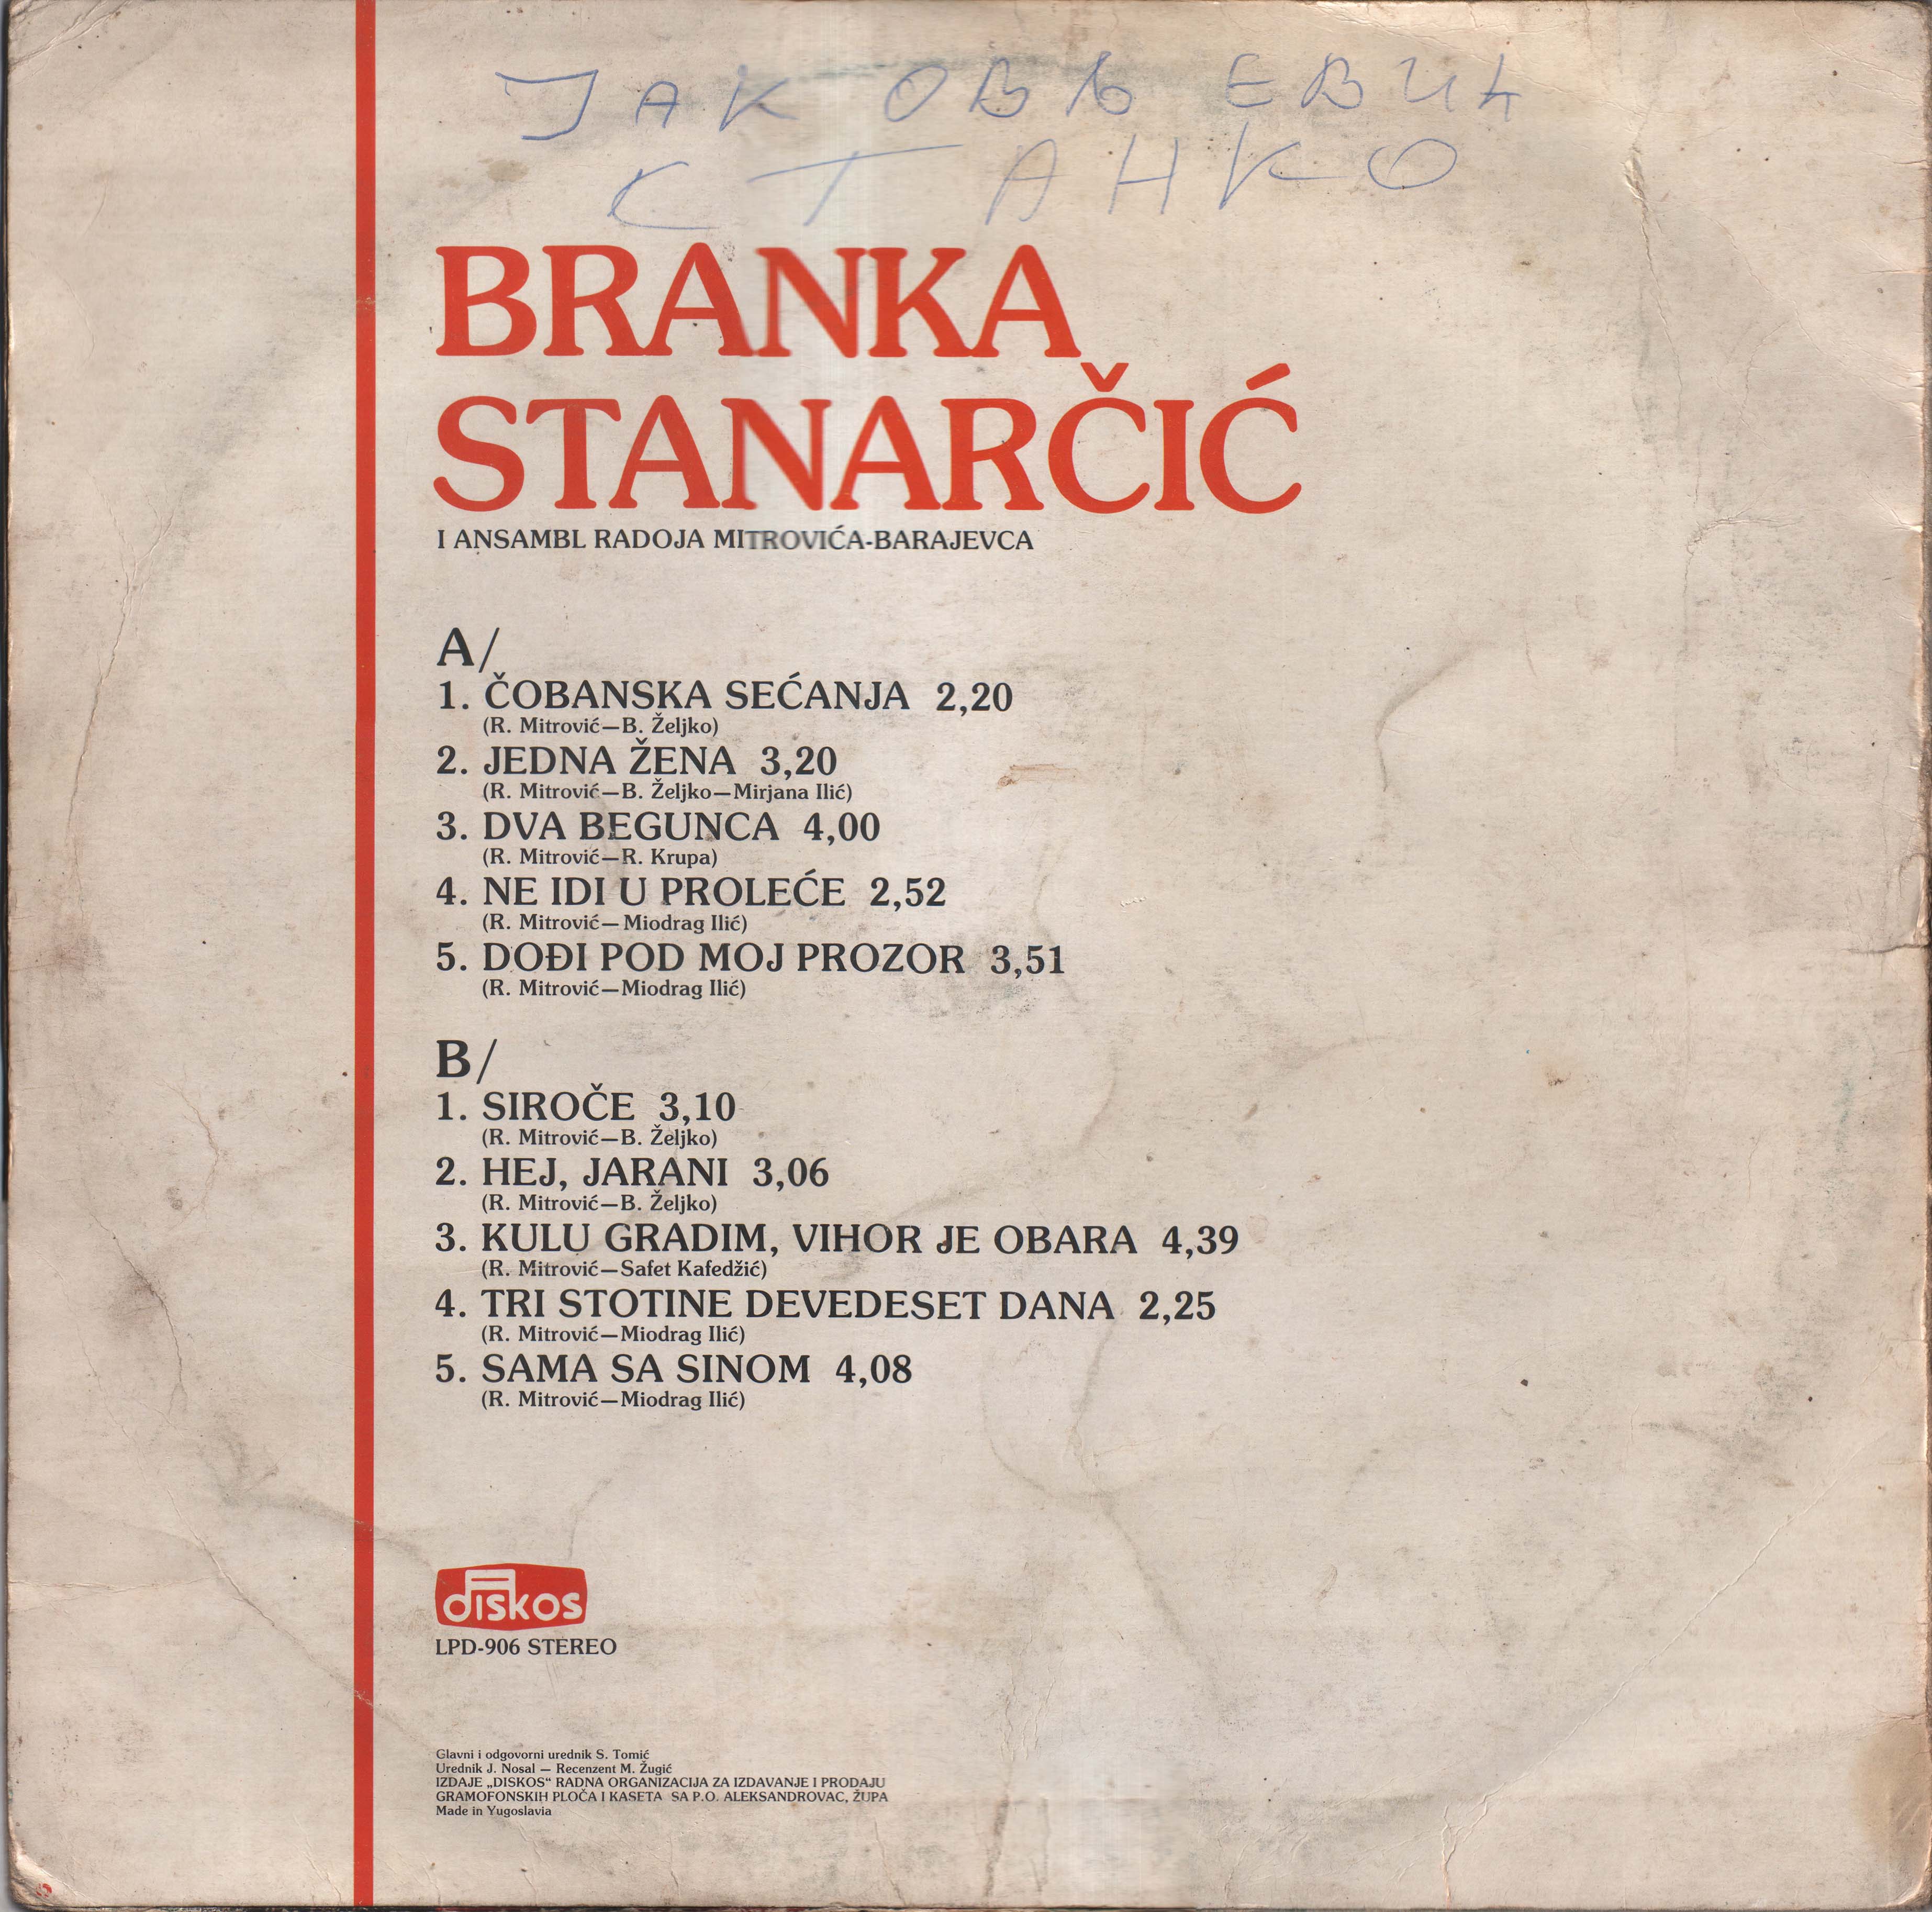 Branka Stanarcic 1981 Z